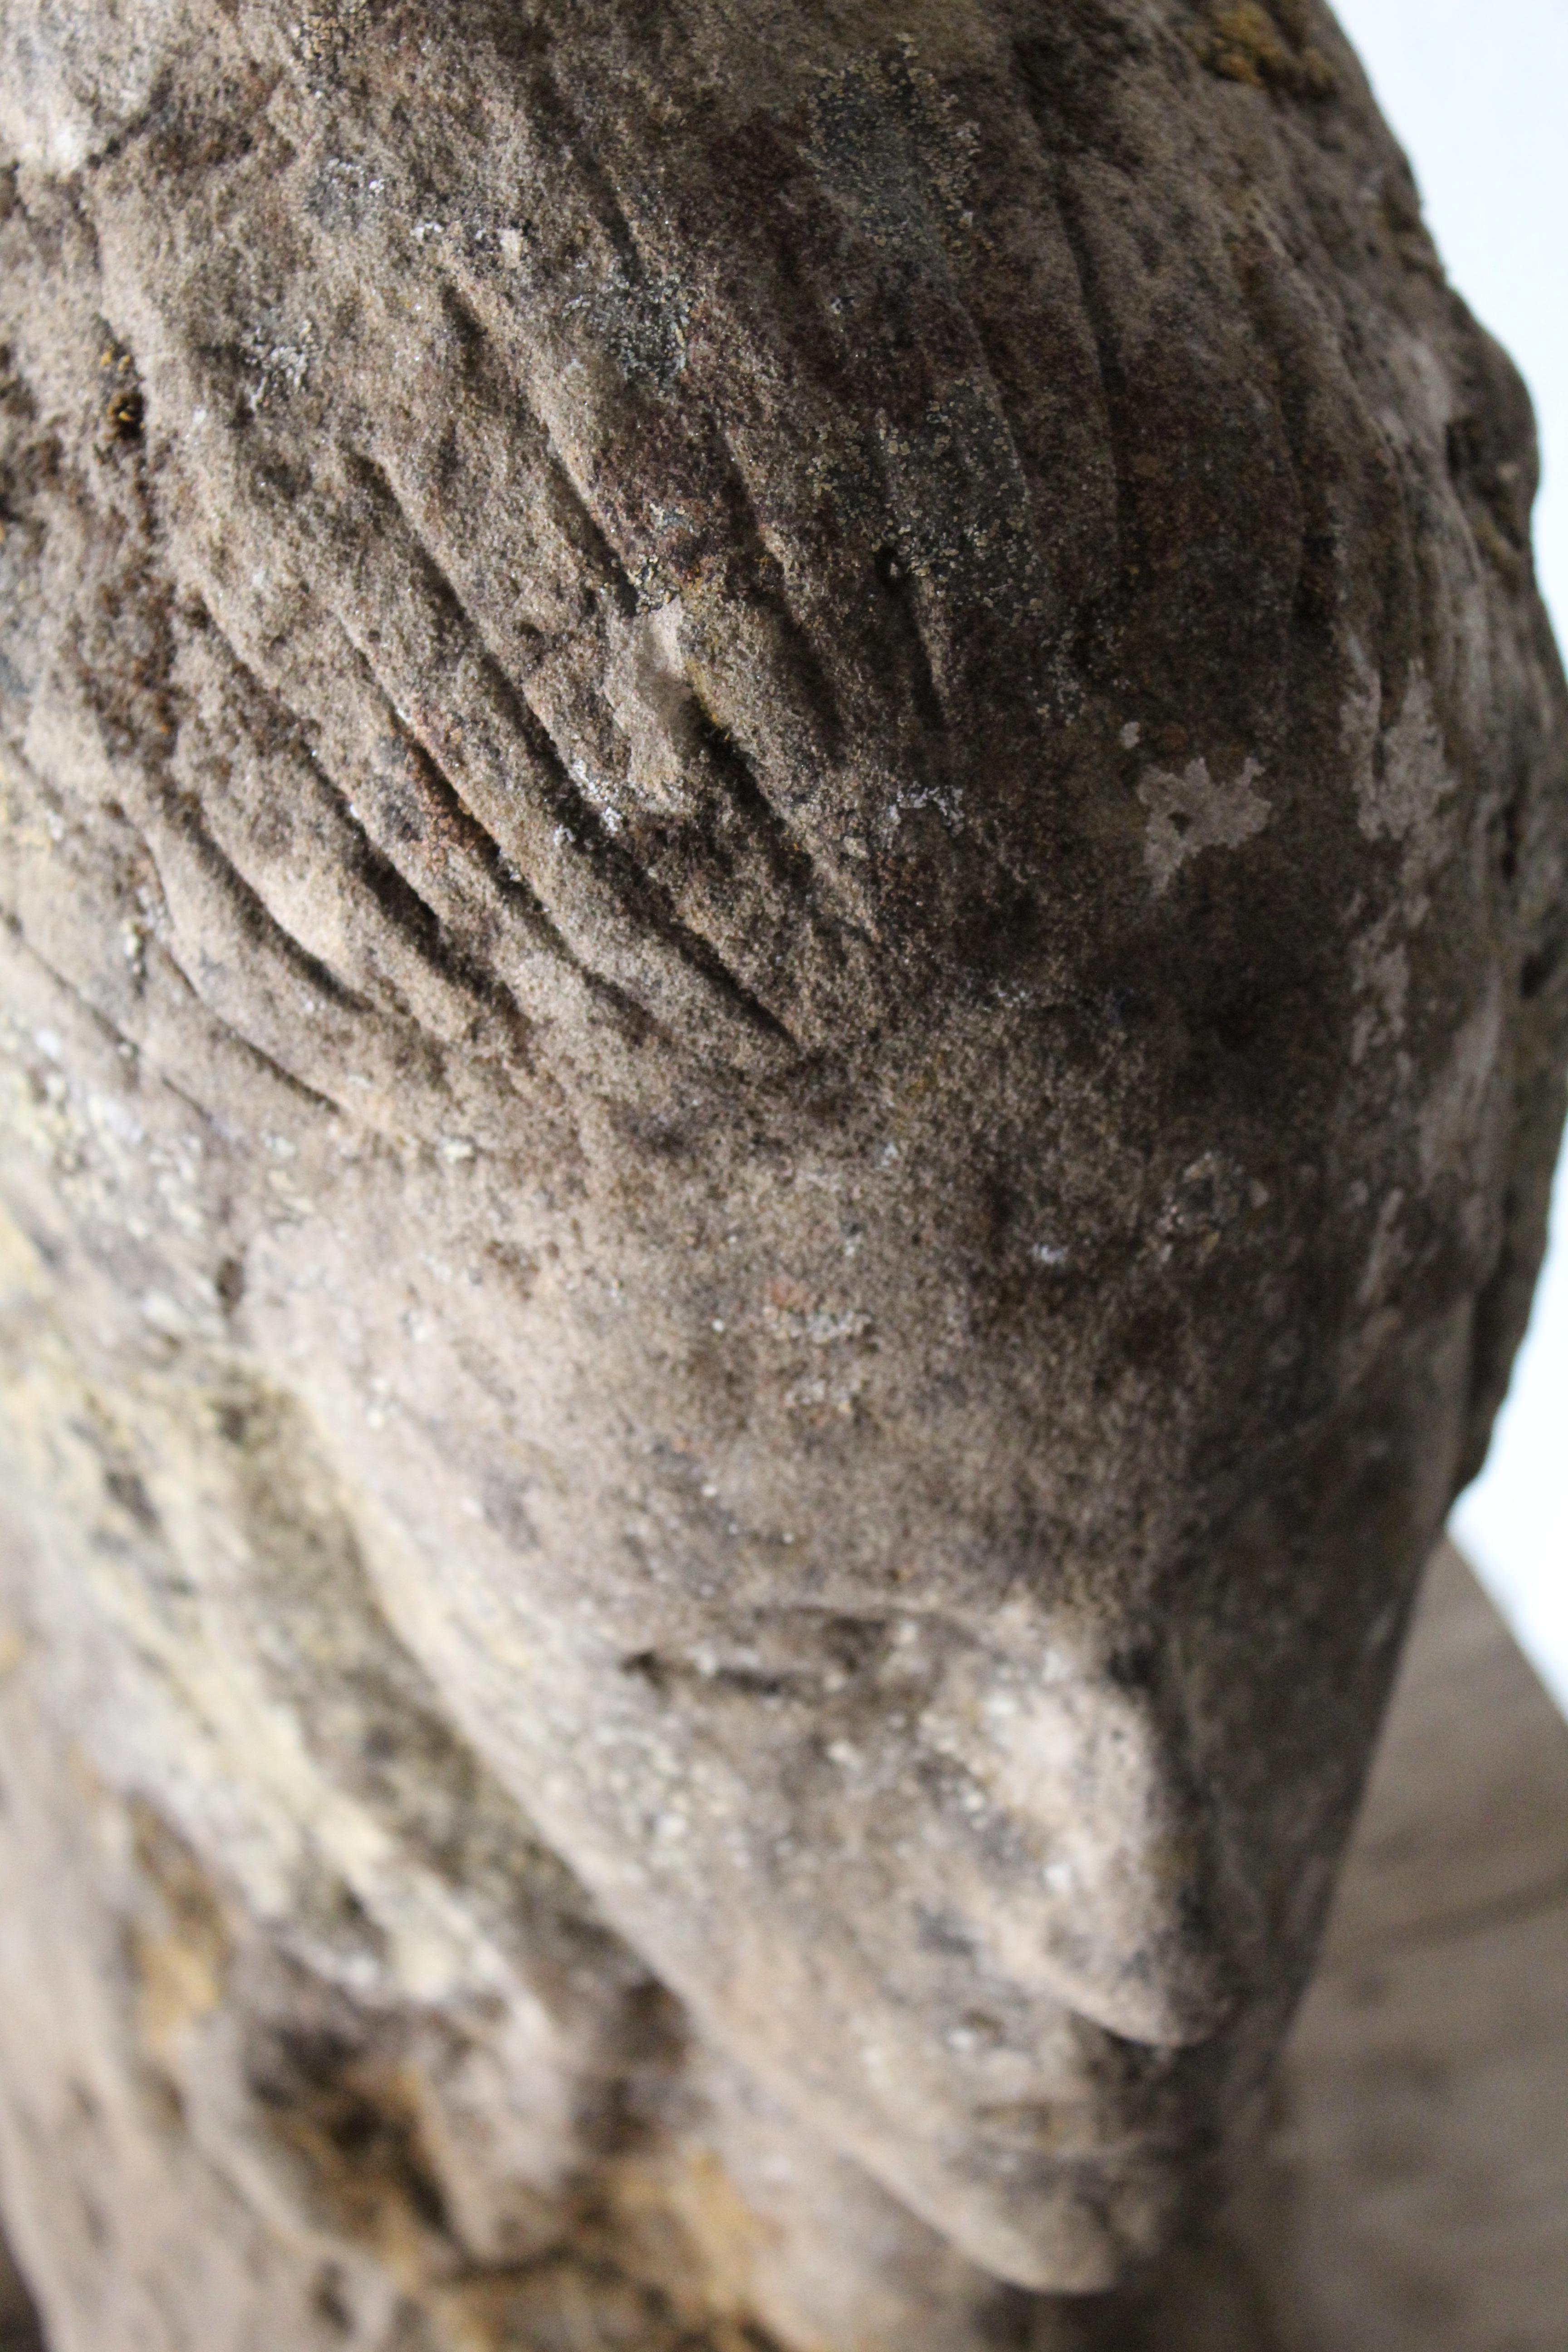 Elegantly carved antique stone bust.